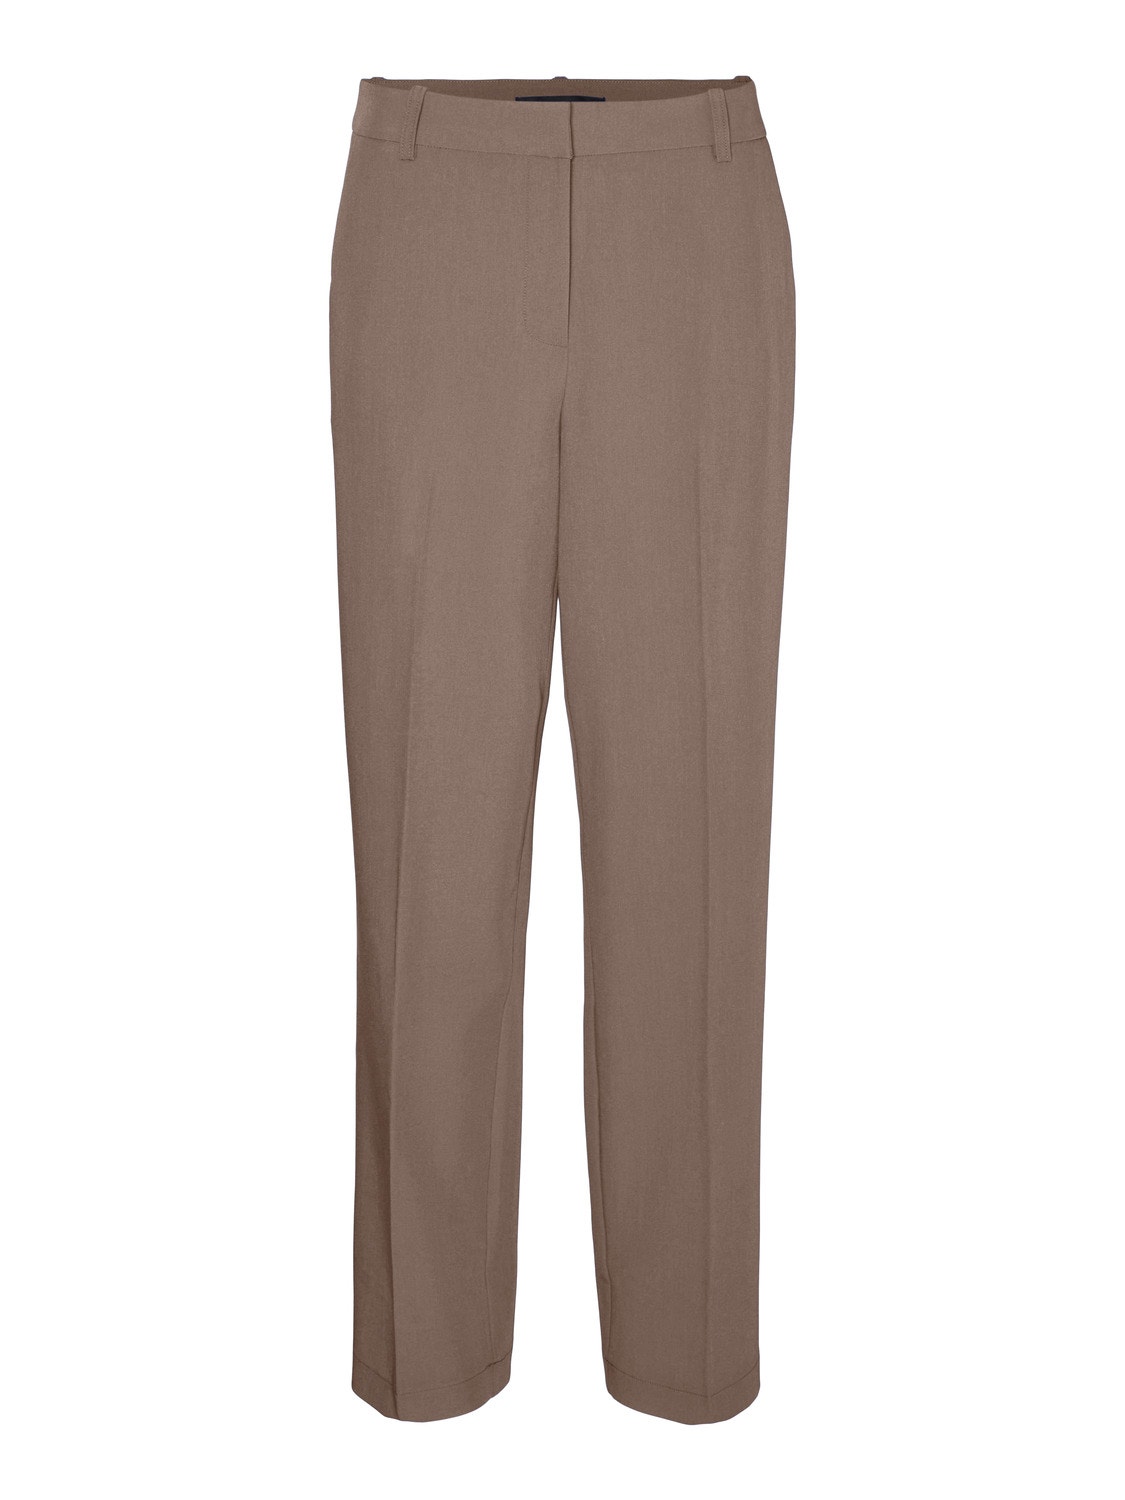 Vero Moda VMTESSLIVA Trousers -Brown Lentil - 10291162